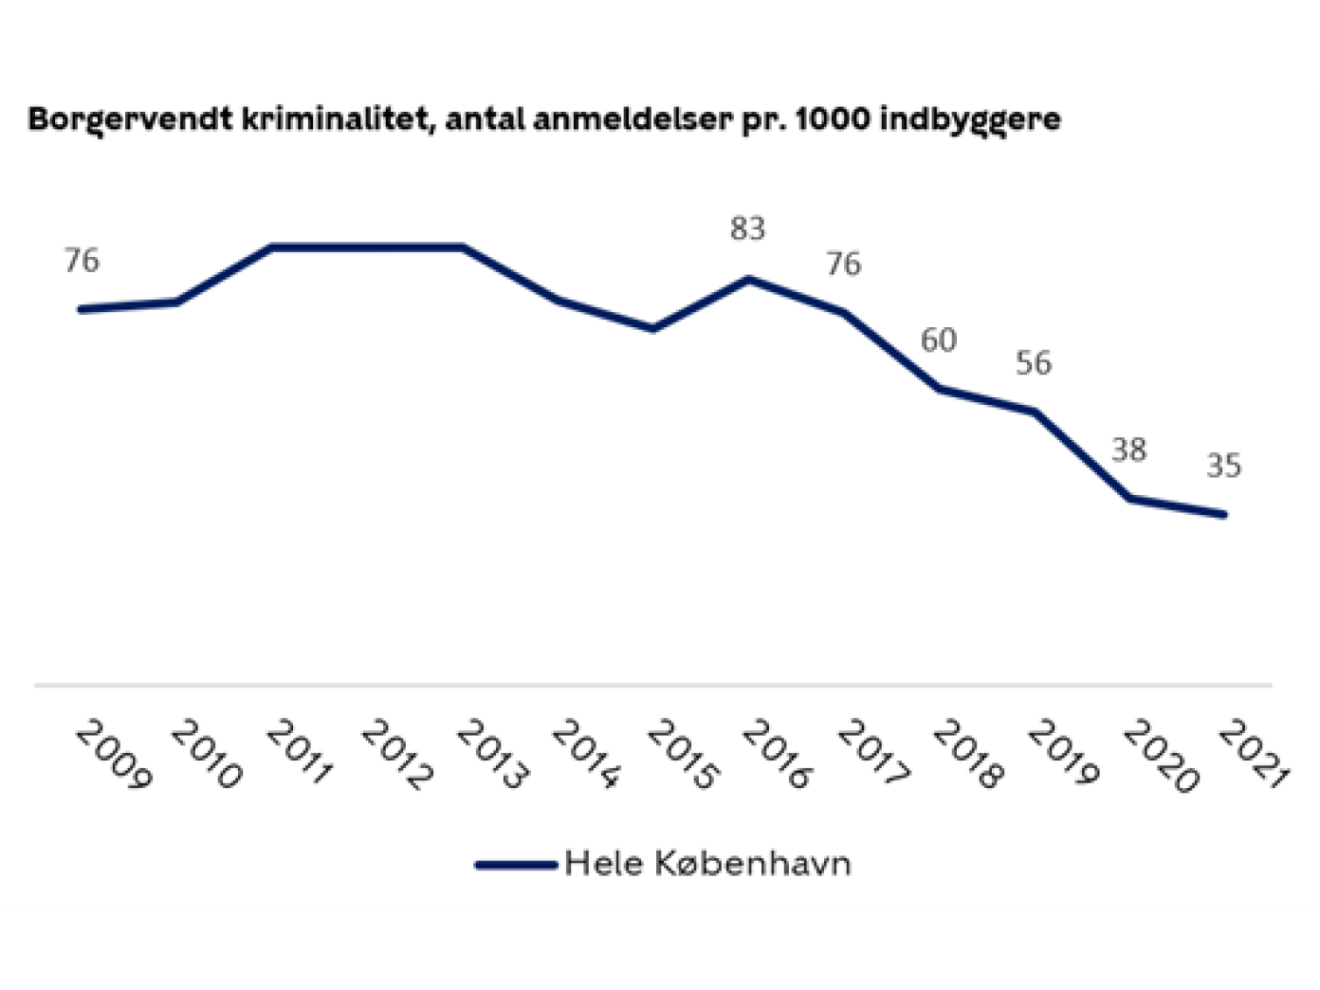 Nye tal slår fast: Den borgervendte kriminalitet i København falder for femte år i træk